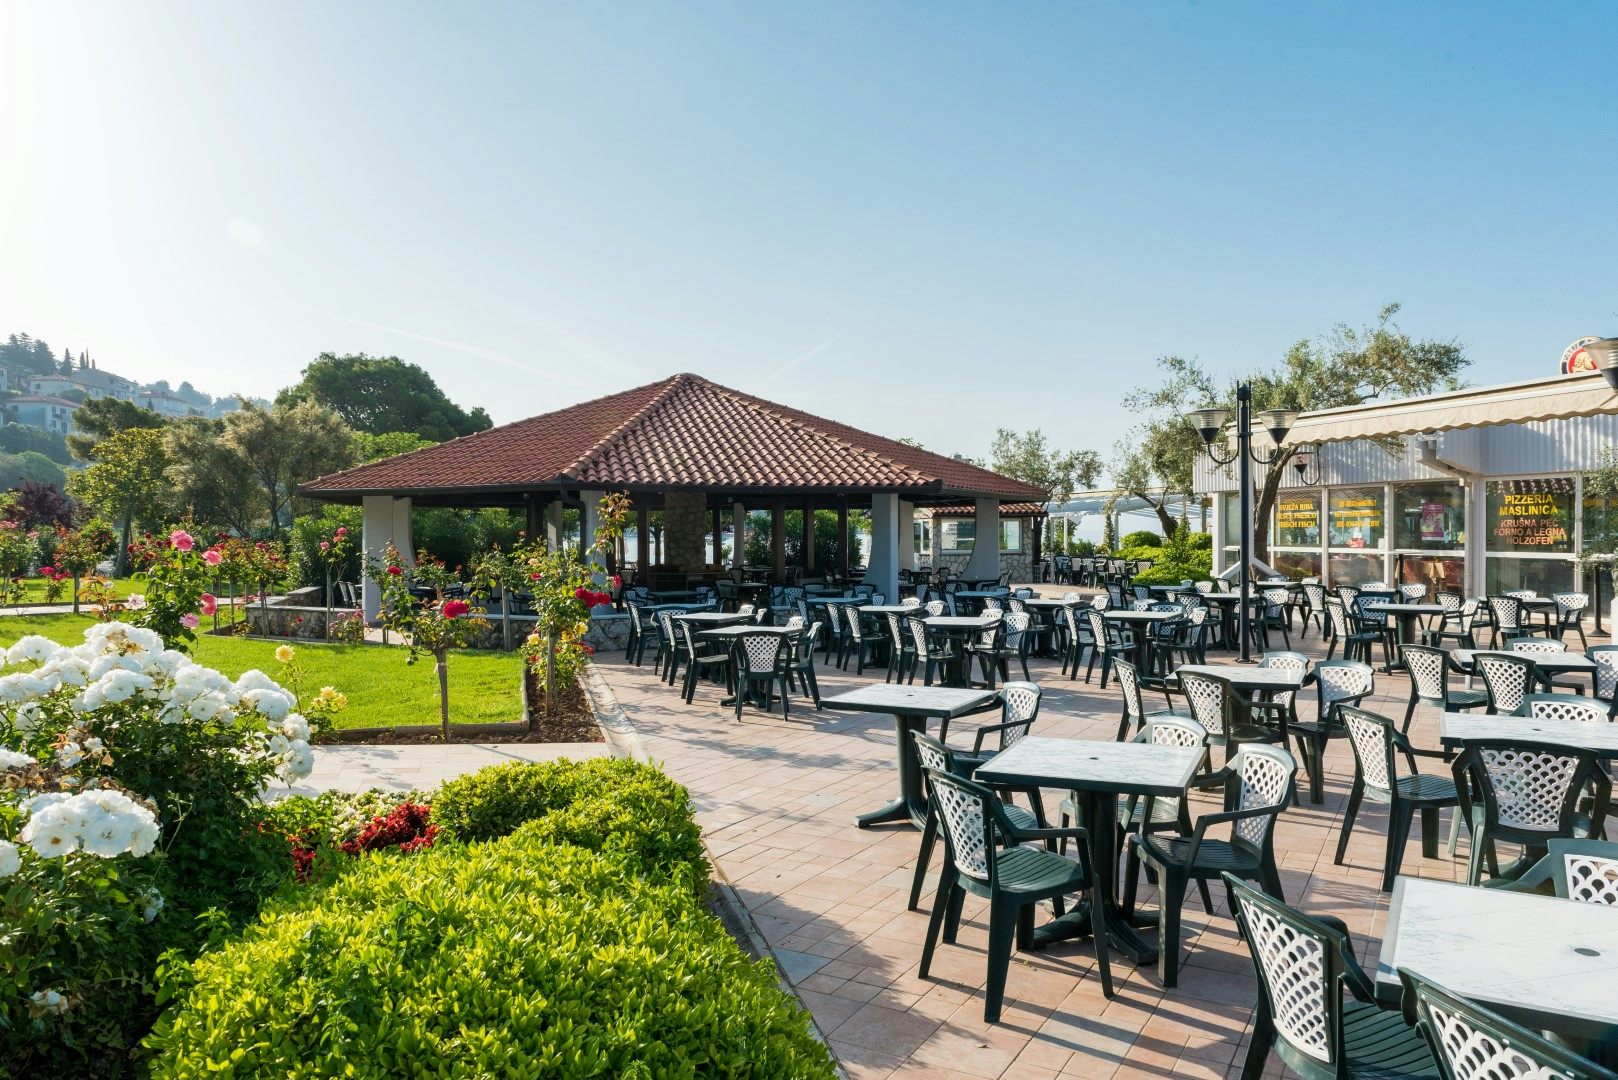 <ul><li>Hotel restaurants (1850 seats) </li><li>Oliva Grill Restaurant (440 seats)</li><li> Conference bar</li><li>Hedera Club bar (Hedera Hotel 4*) </li><li>Ancora bar (beachfront)</li></ul>  